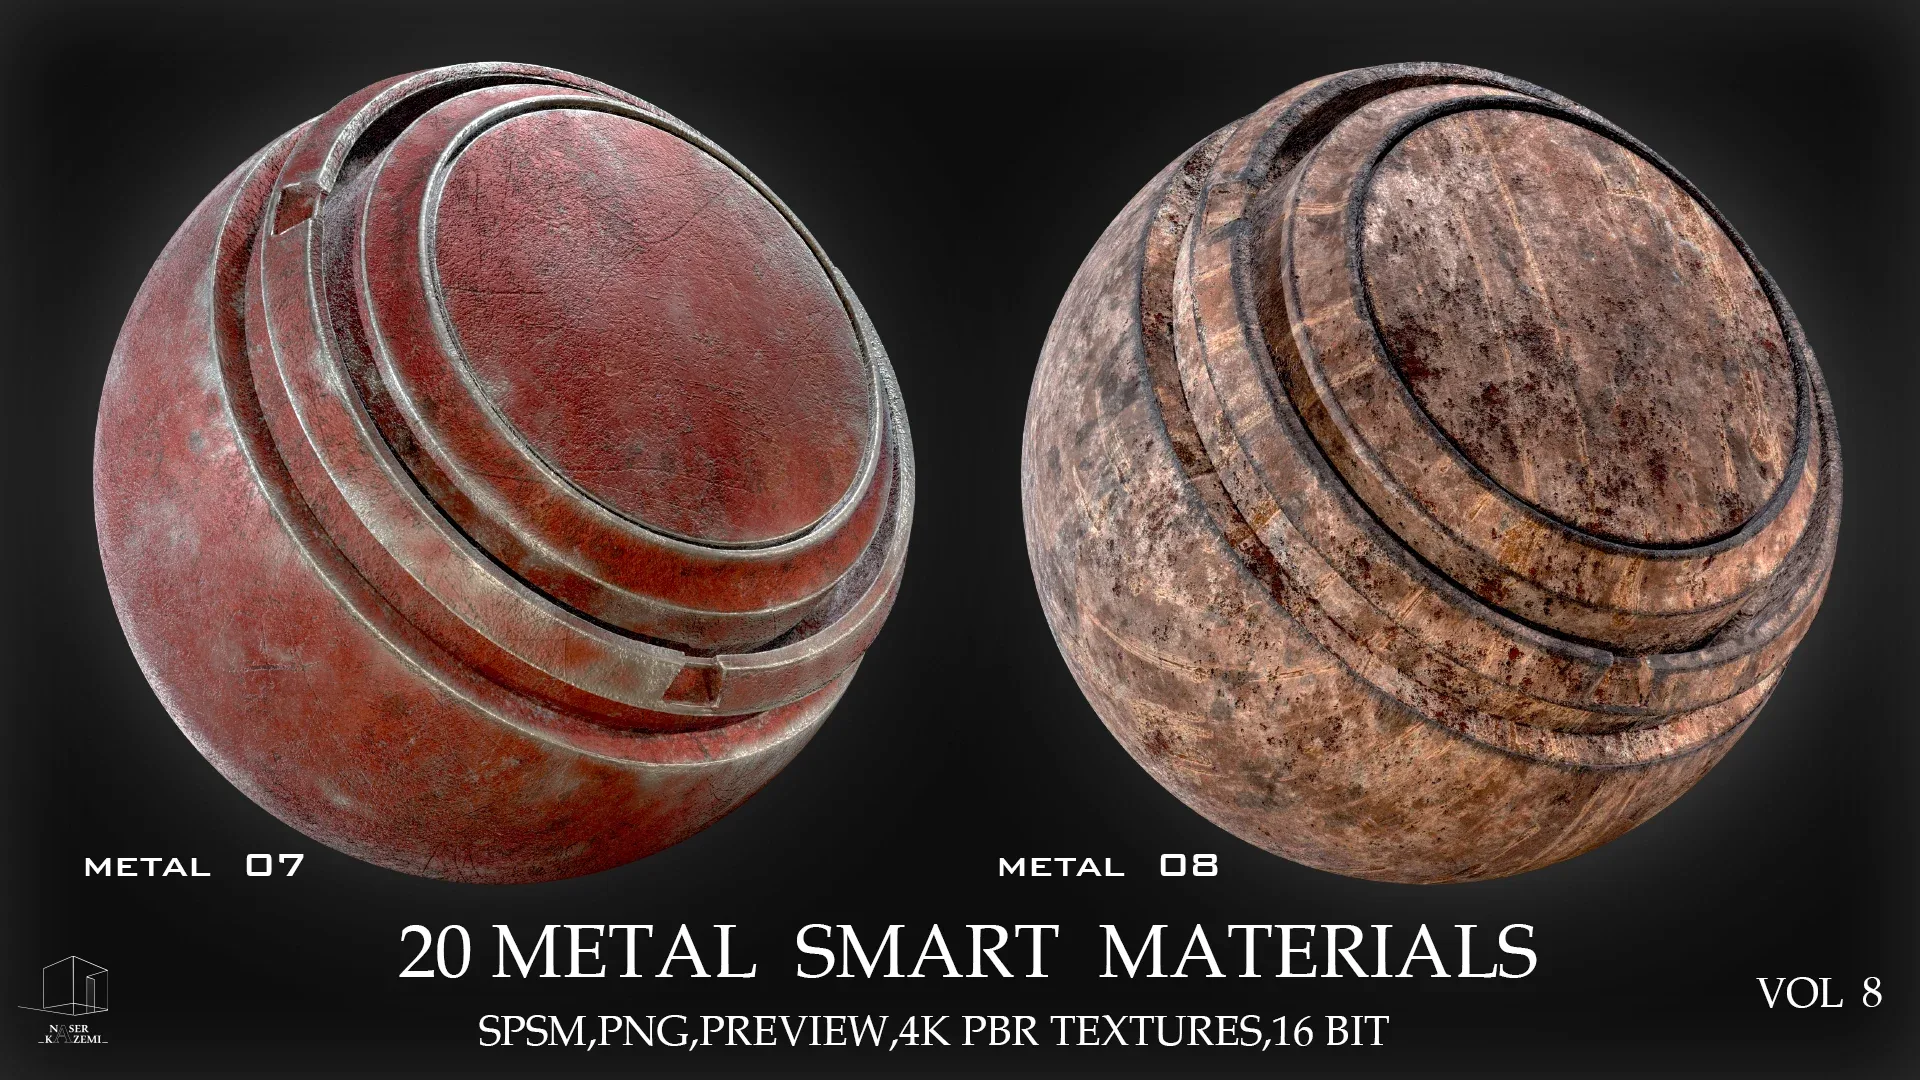 20 METAL SMART MATERIALS & PBR TEXTURES-VOL 8